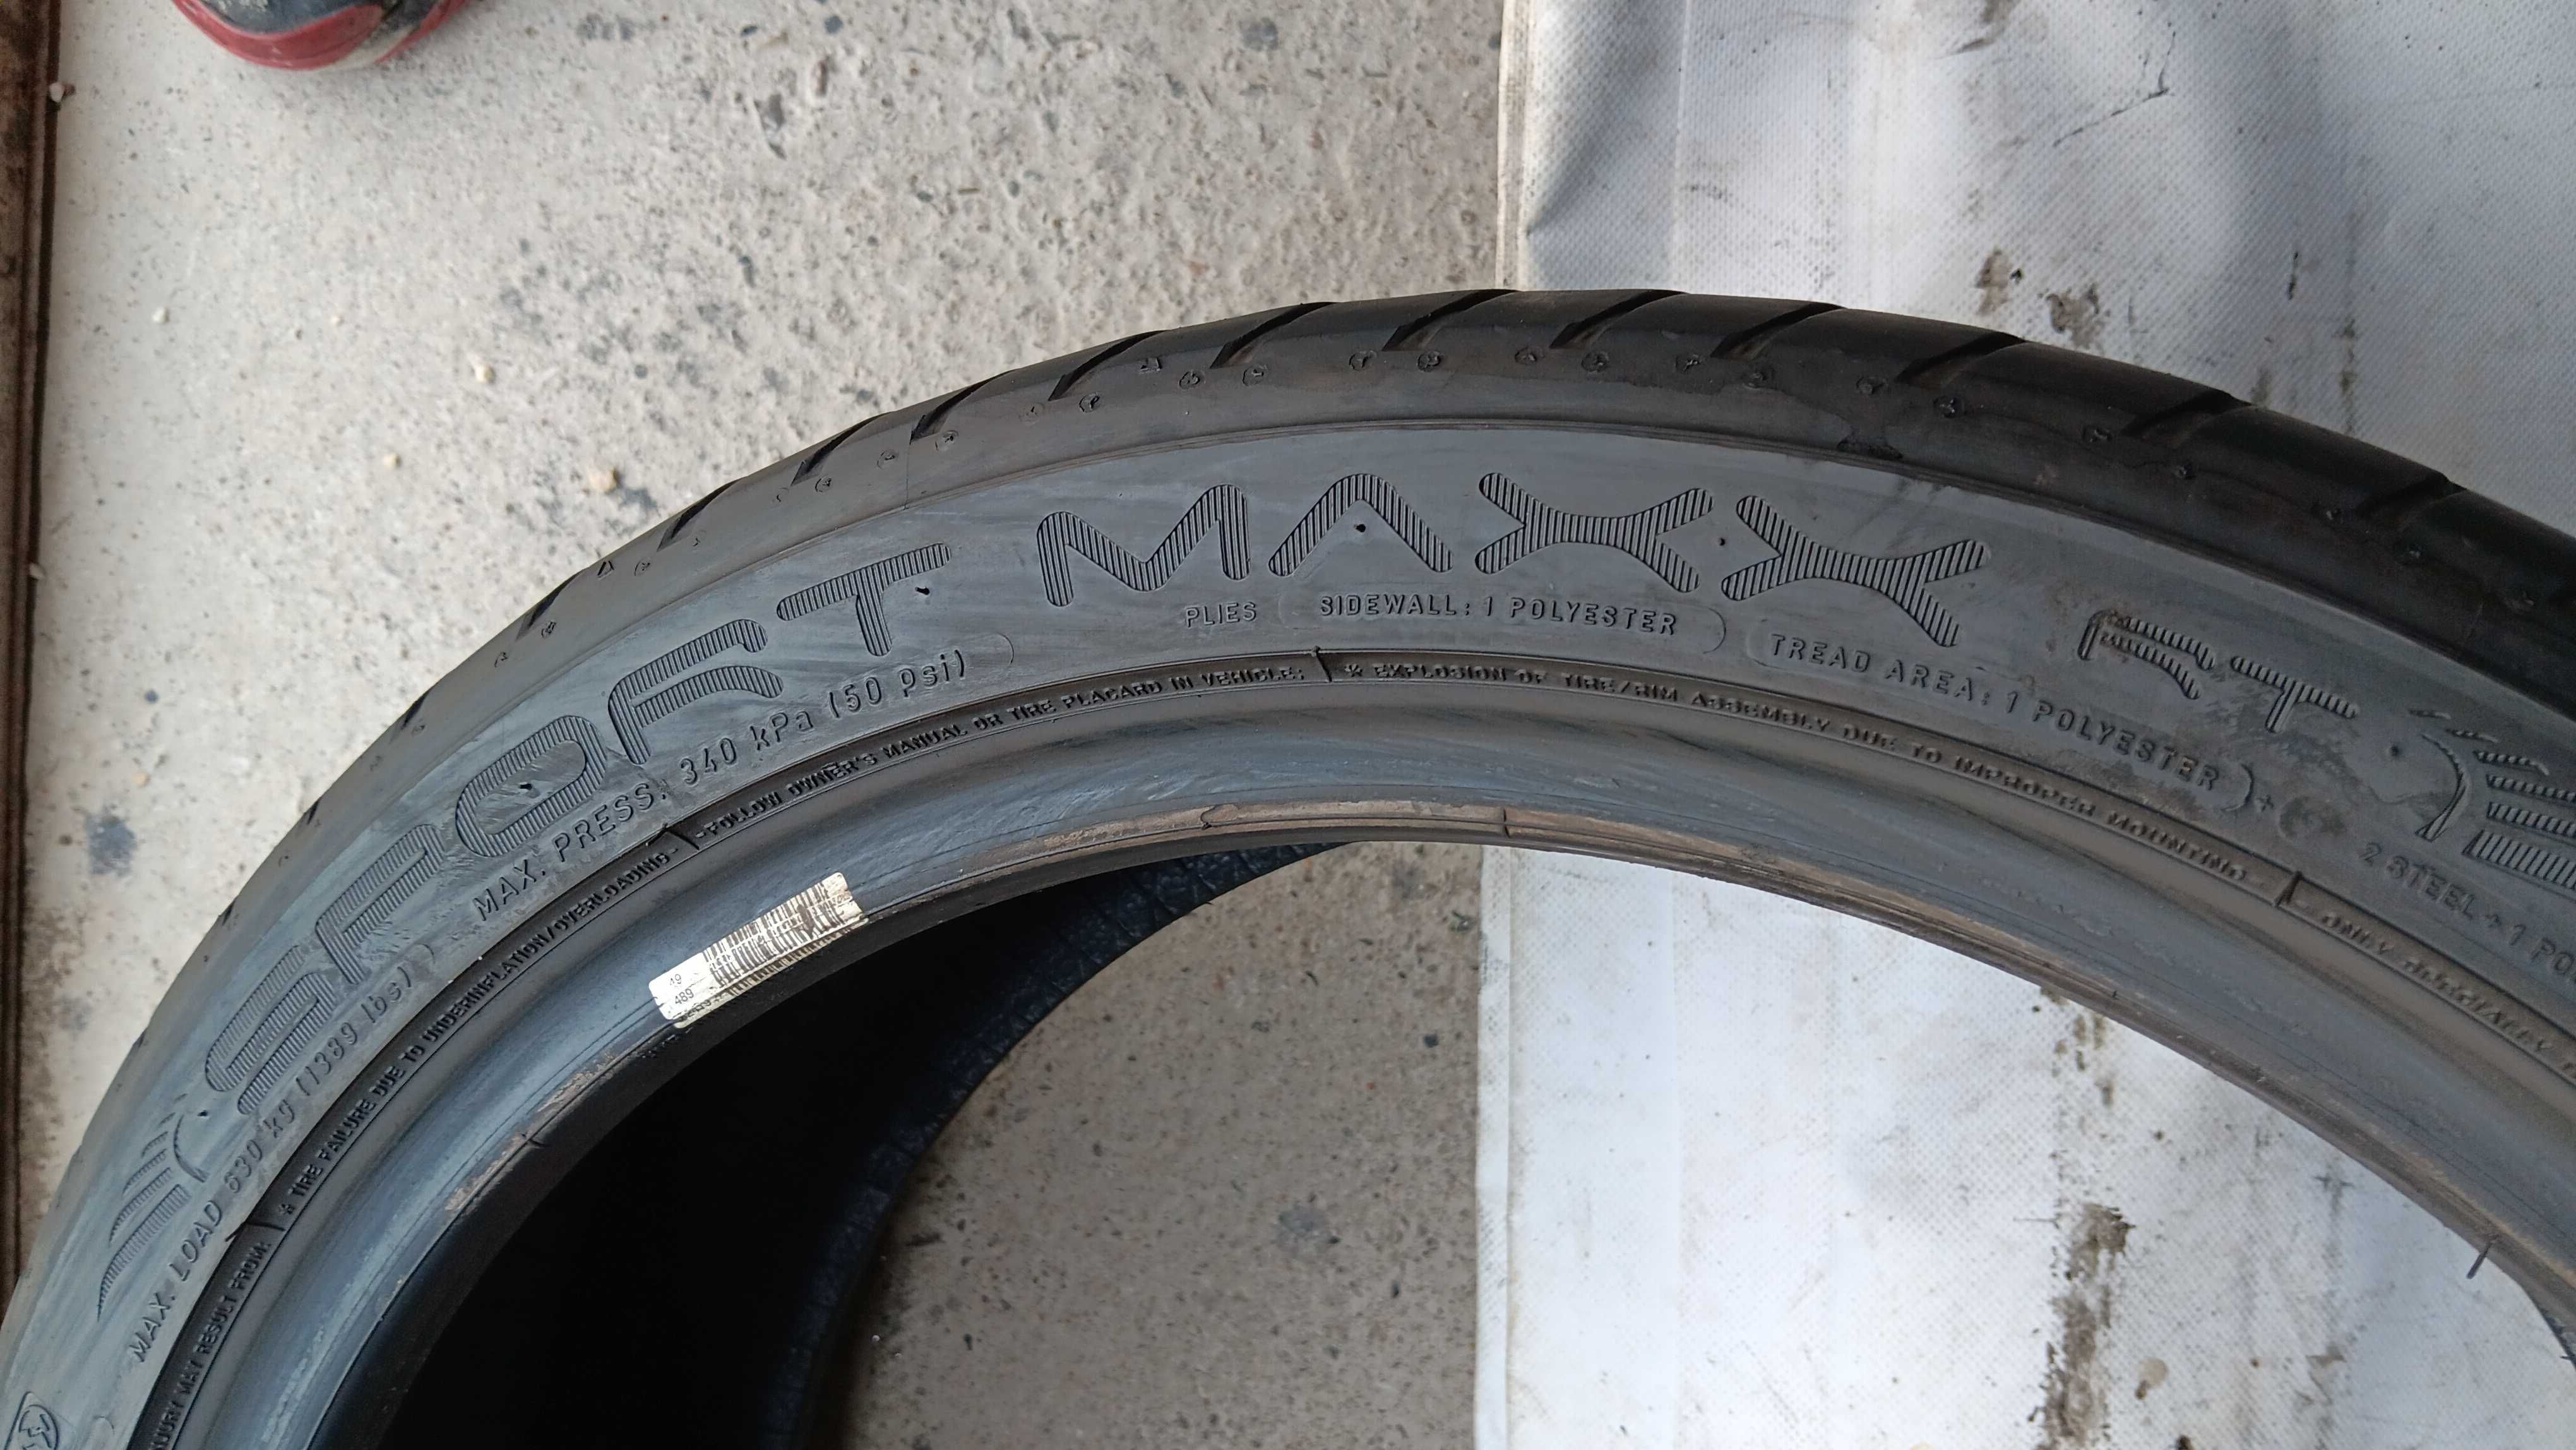 225/40/18 Dunlop sport maxx